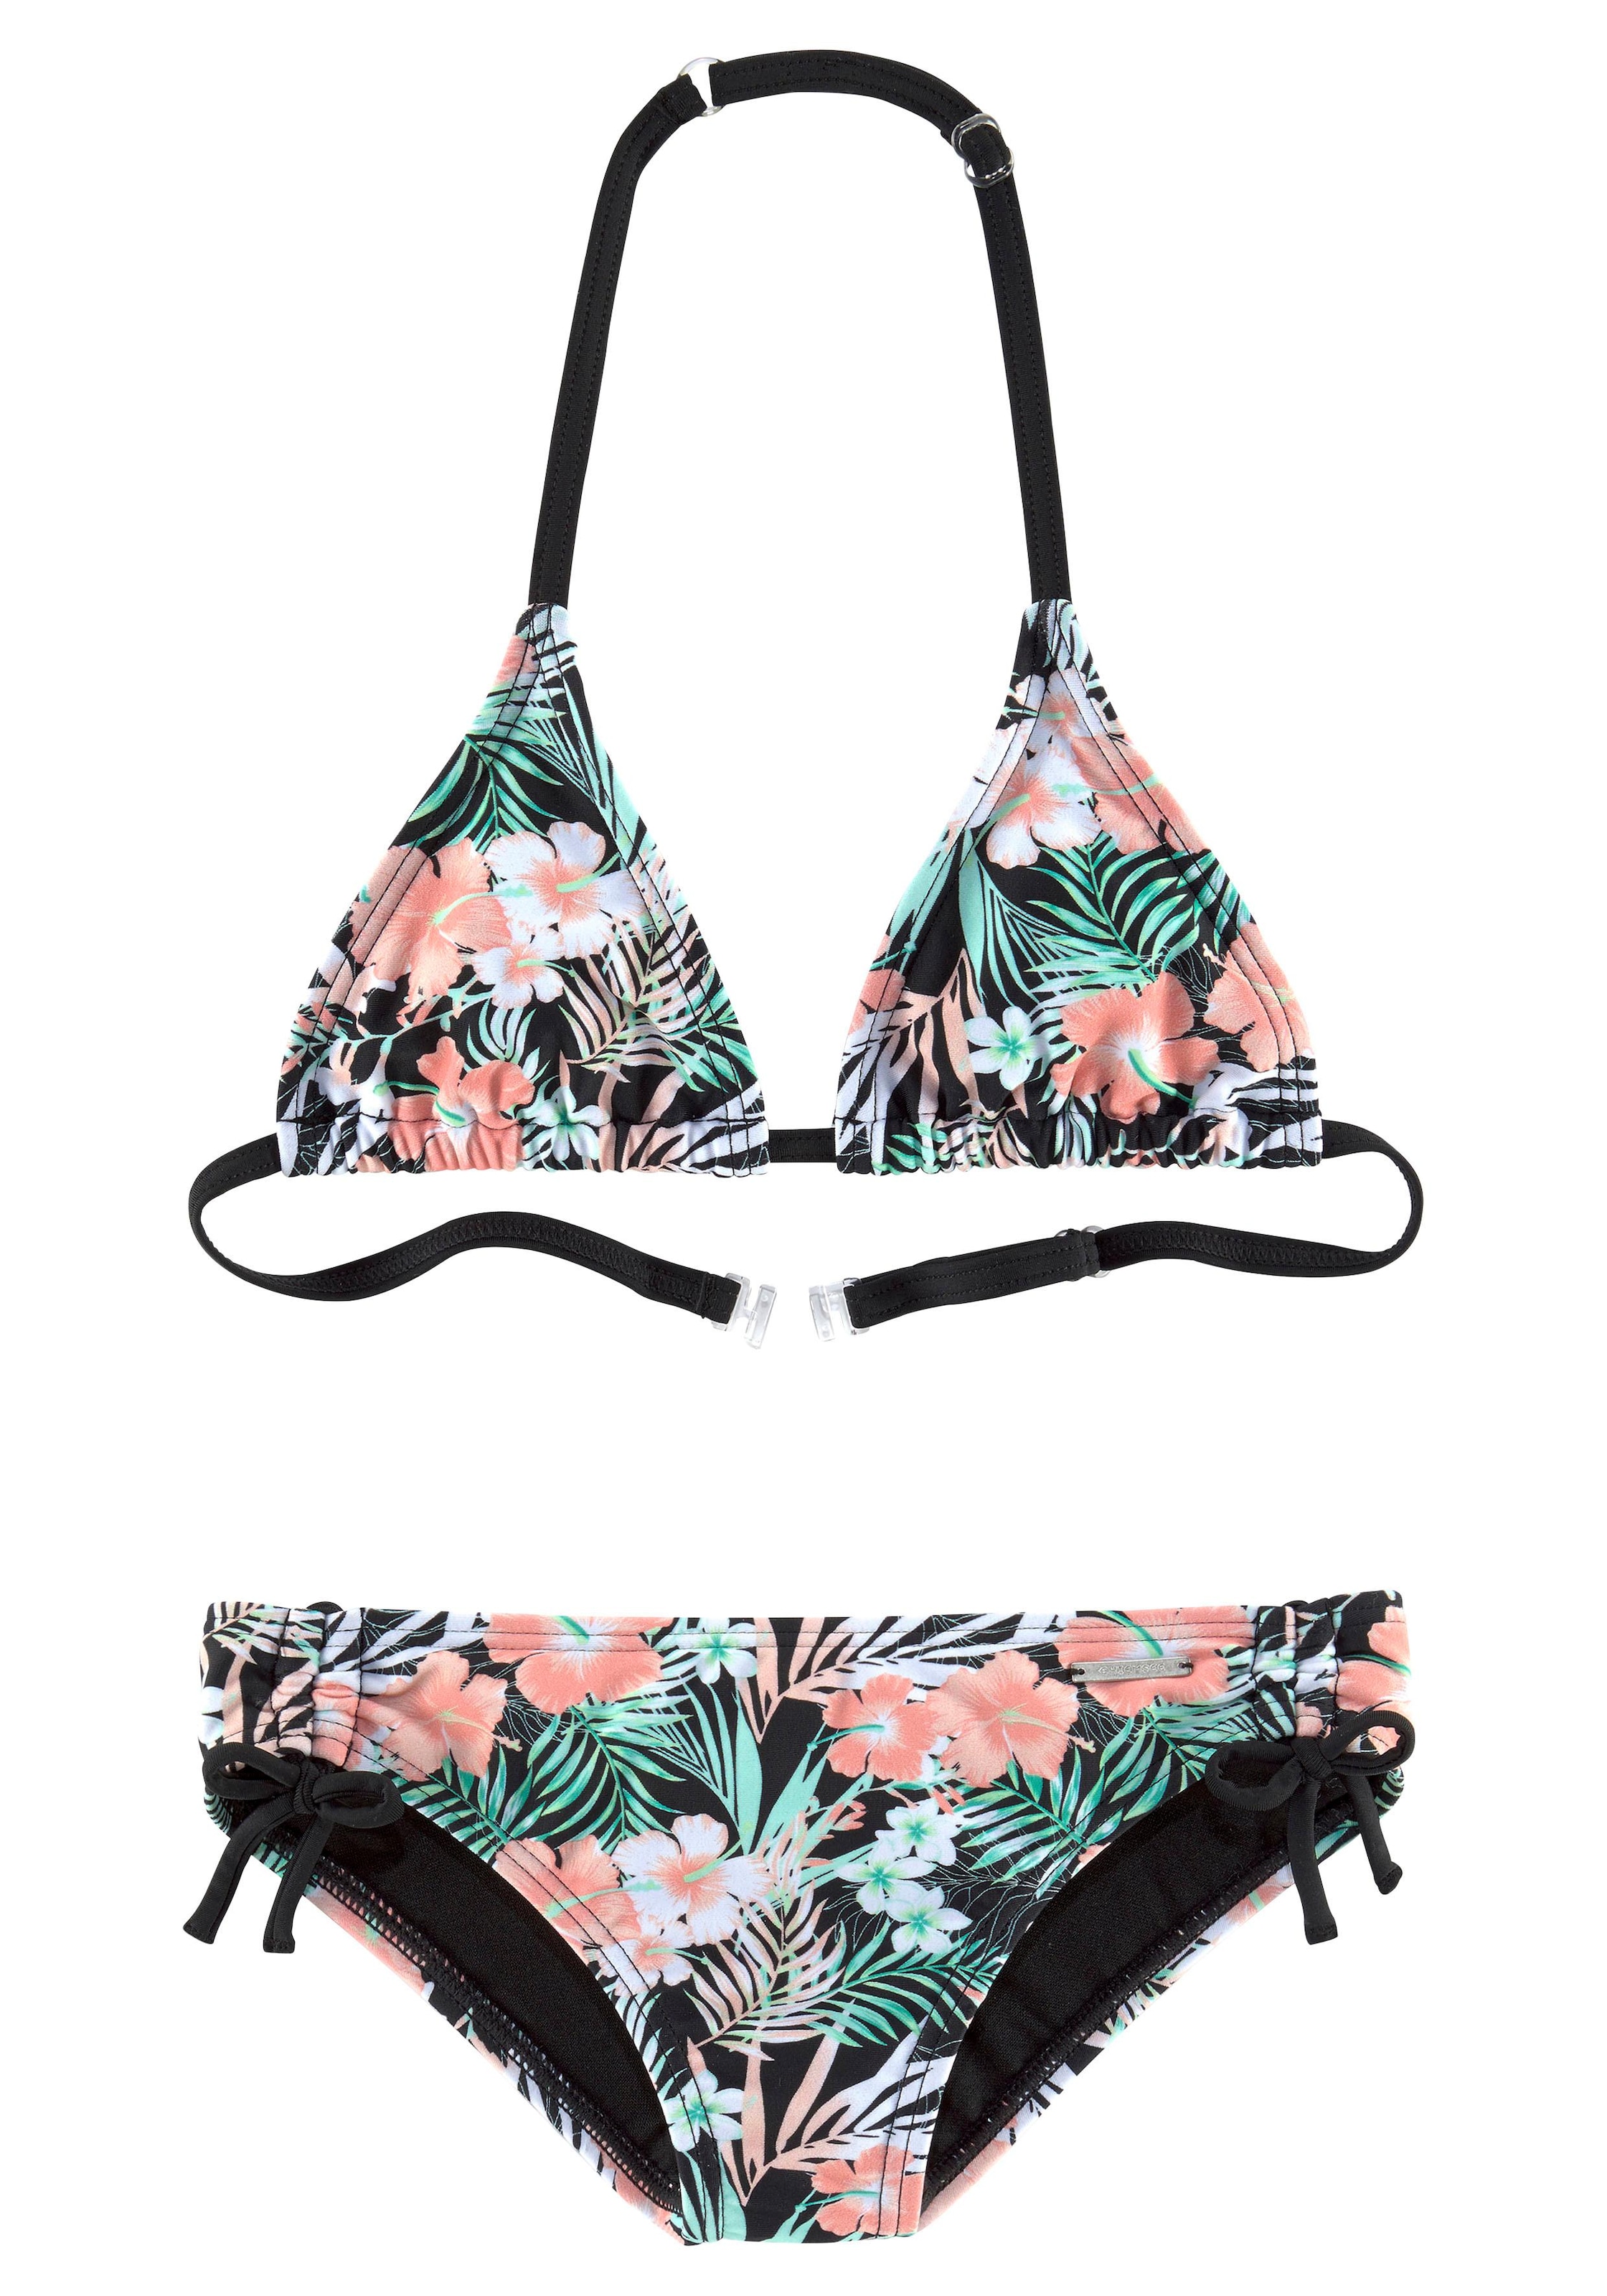 floralem Chiemsee mit Triangel-Bikini, Design bei